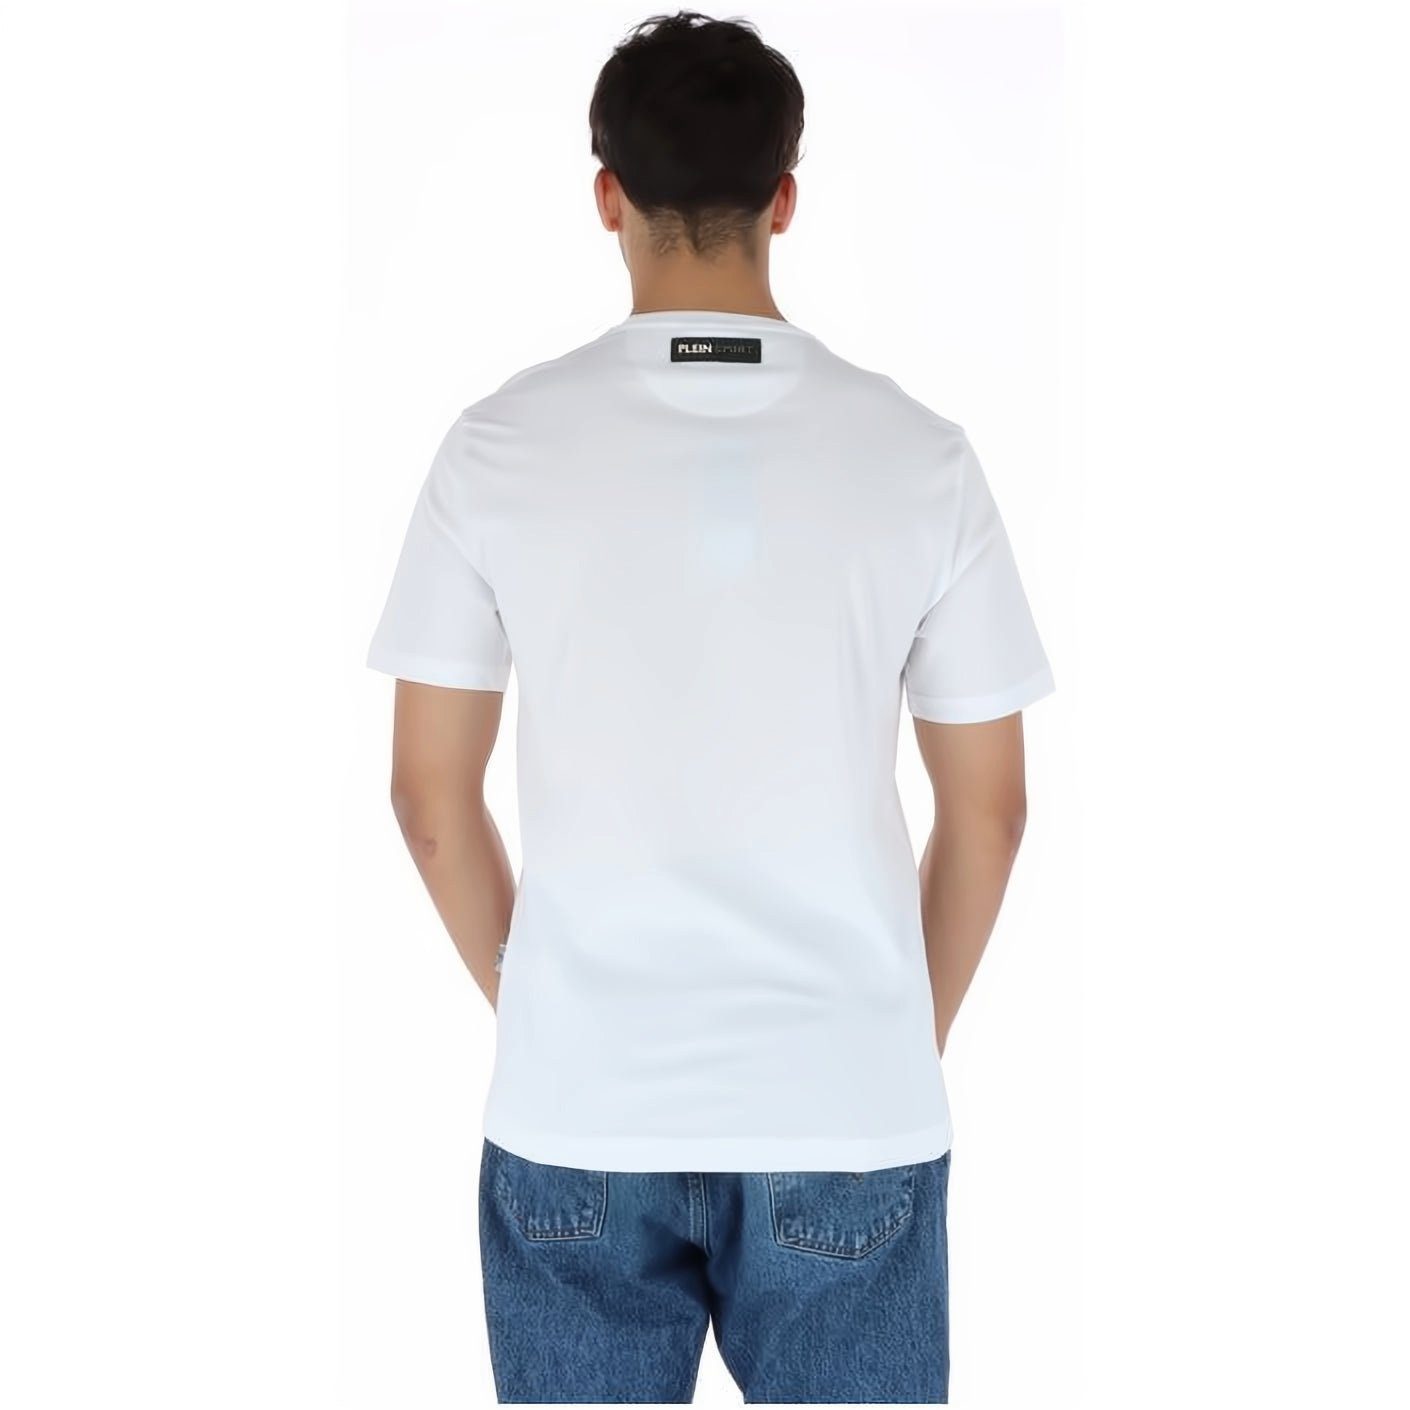 PLEIN Stylischer Tragekomfort, SPORT Farbauswahl vielfältige hoher Look, ROUND NECK T-Shirt